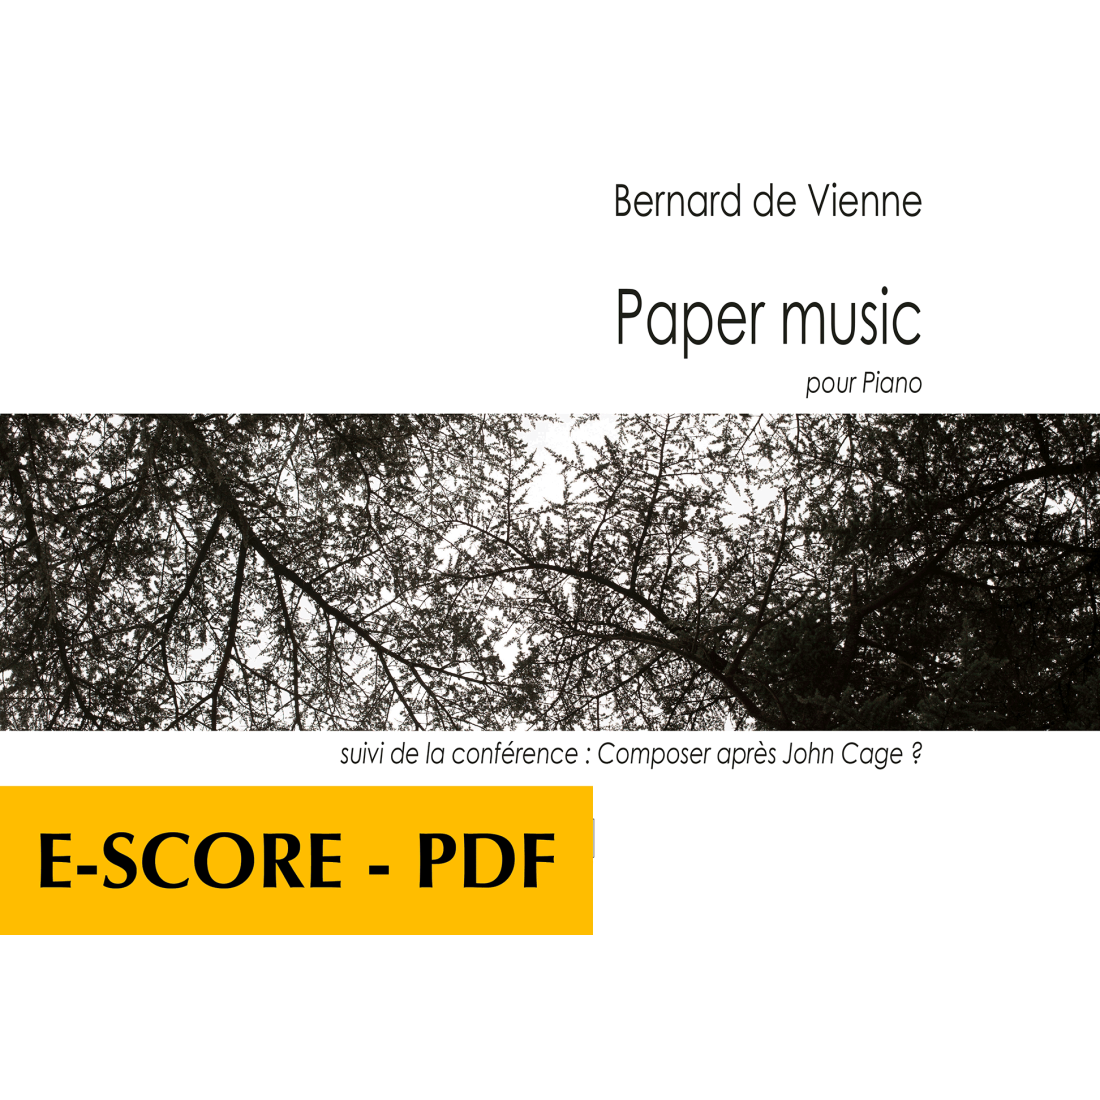 Paper music for piano - E-score PDF